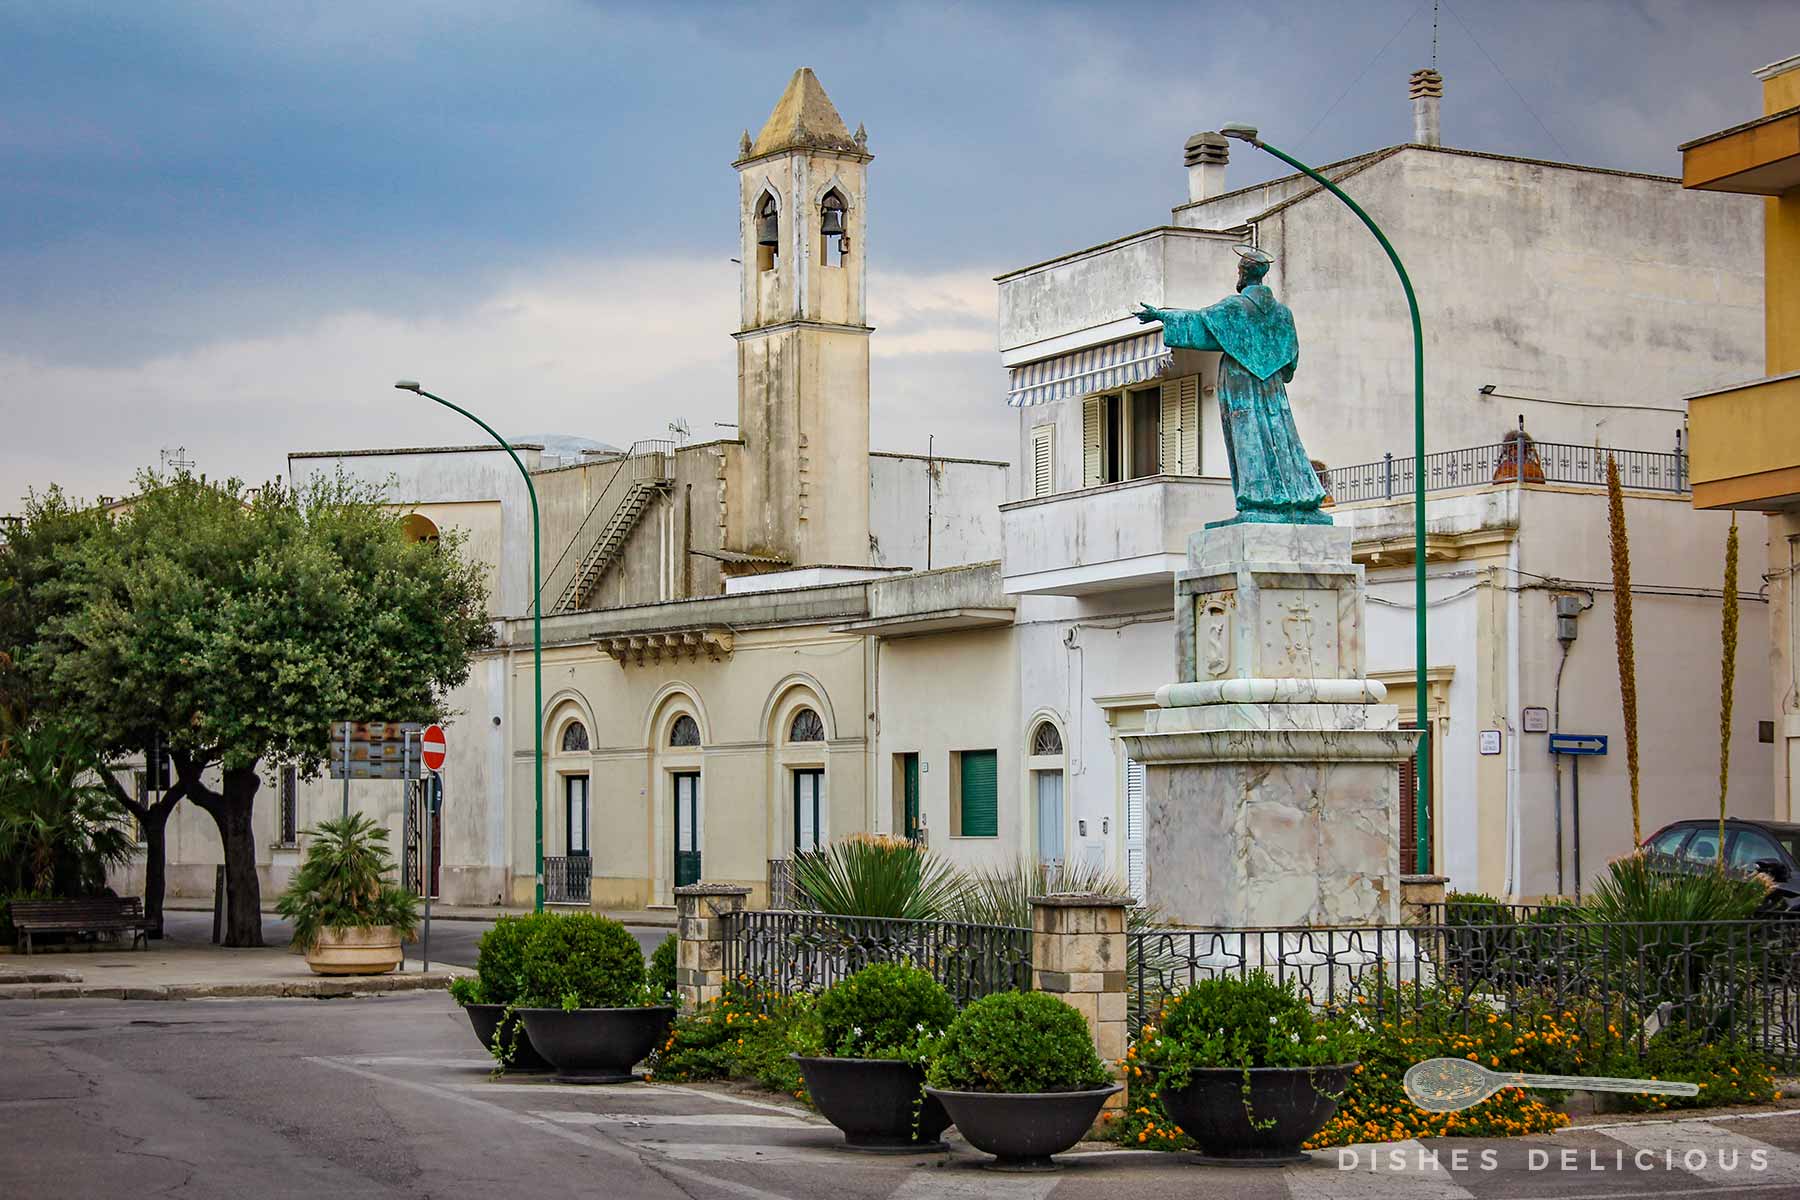 Piazza in Copertino mit einer Statue des Heiligen Josef und einem Kirchturm im Hintergrund.